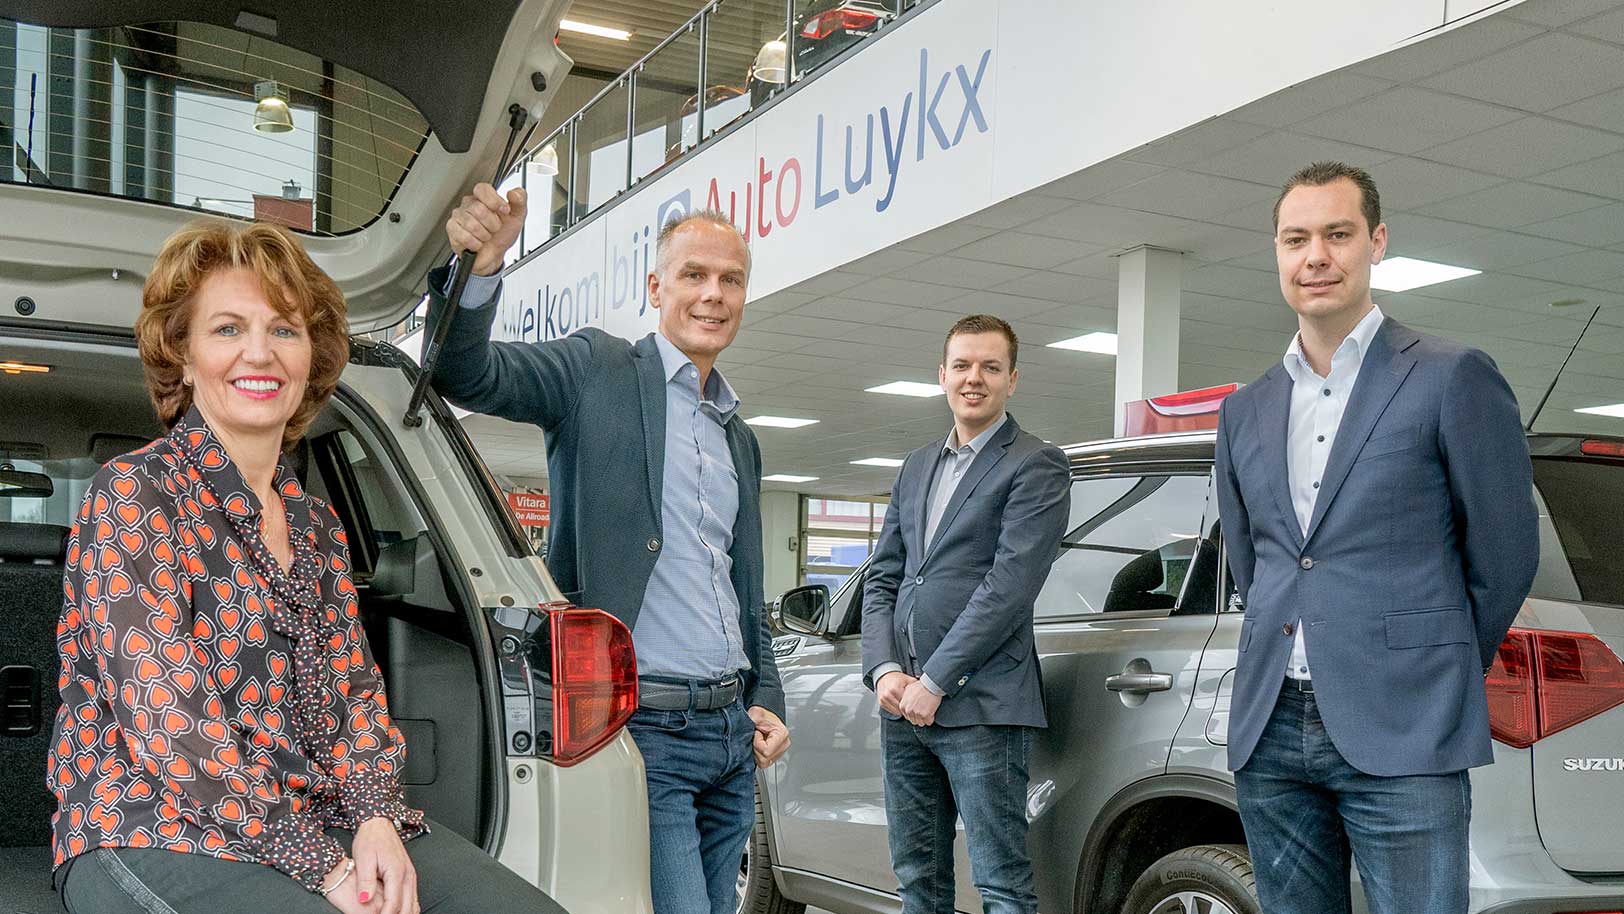 Bianca Cuvelier van Suzuki-dealer Auto Luykx omarmt de jonge generatie in haar bedrijf. De online vernieuwing die haar zoon en neef doorvoerden levert een stijgende lijn in leads op. Website en WhatsApp zijn het verlengde van de vier fysieke vestigingen. 